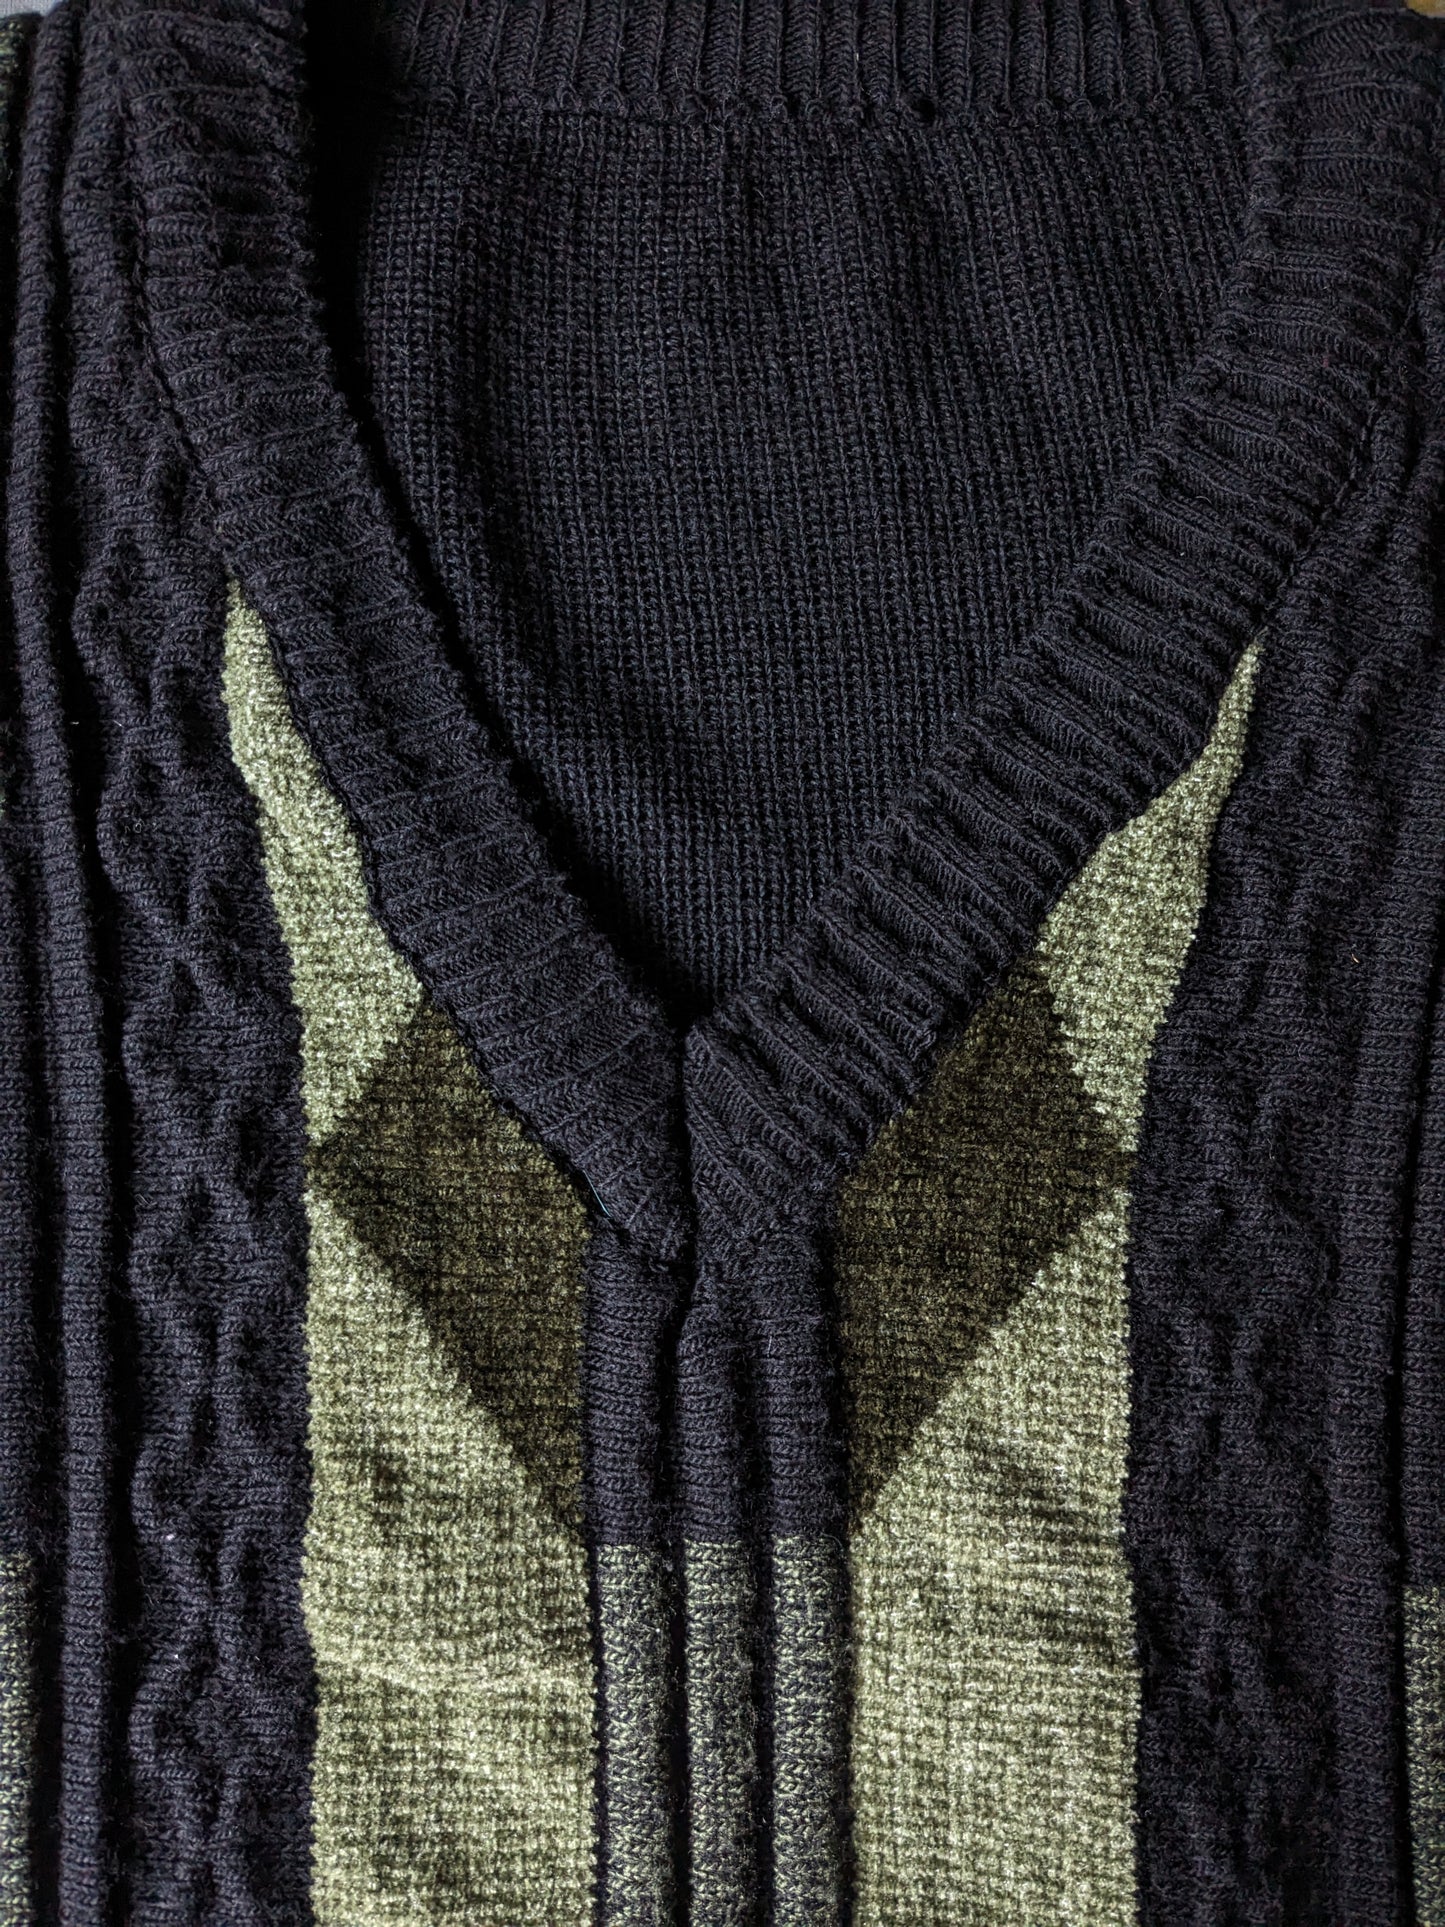 Vintage Wollpullover mit V-Ausschnitt. Schwarzgrün gefärbt. Größe L.